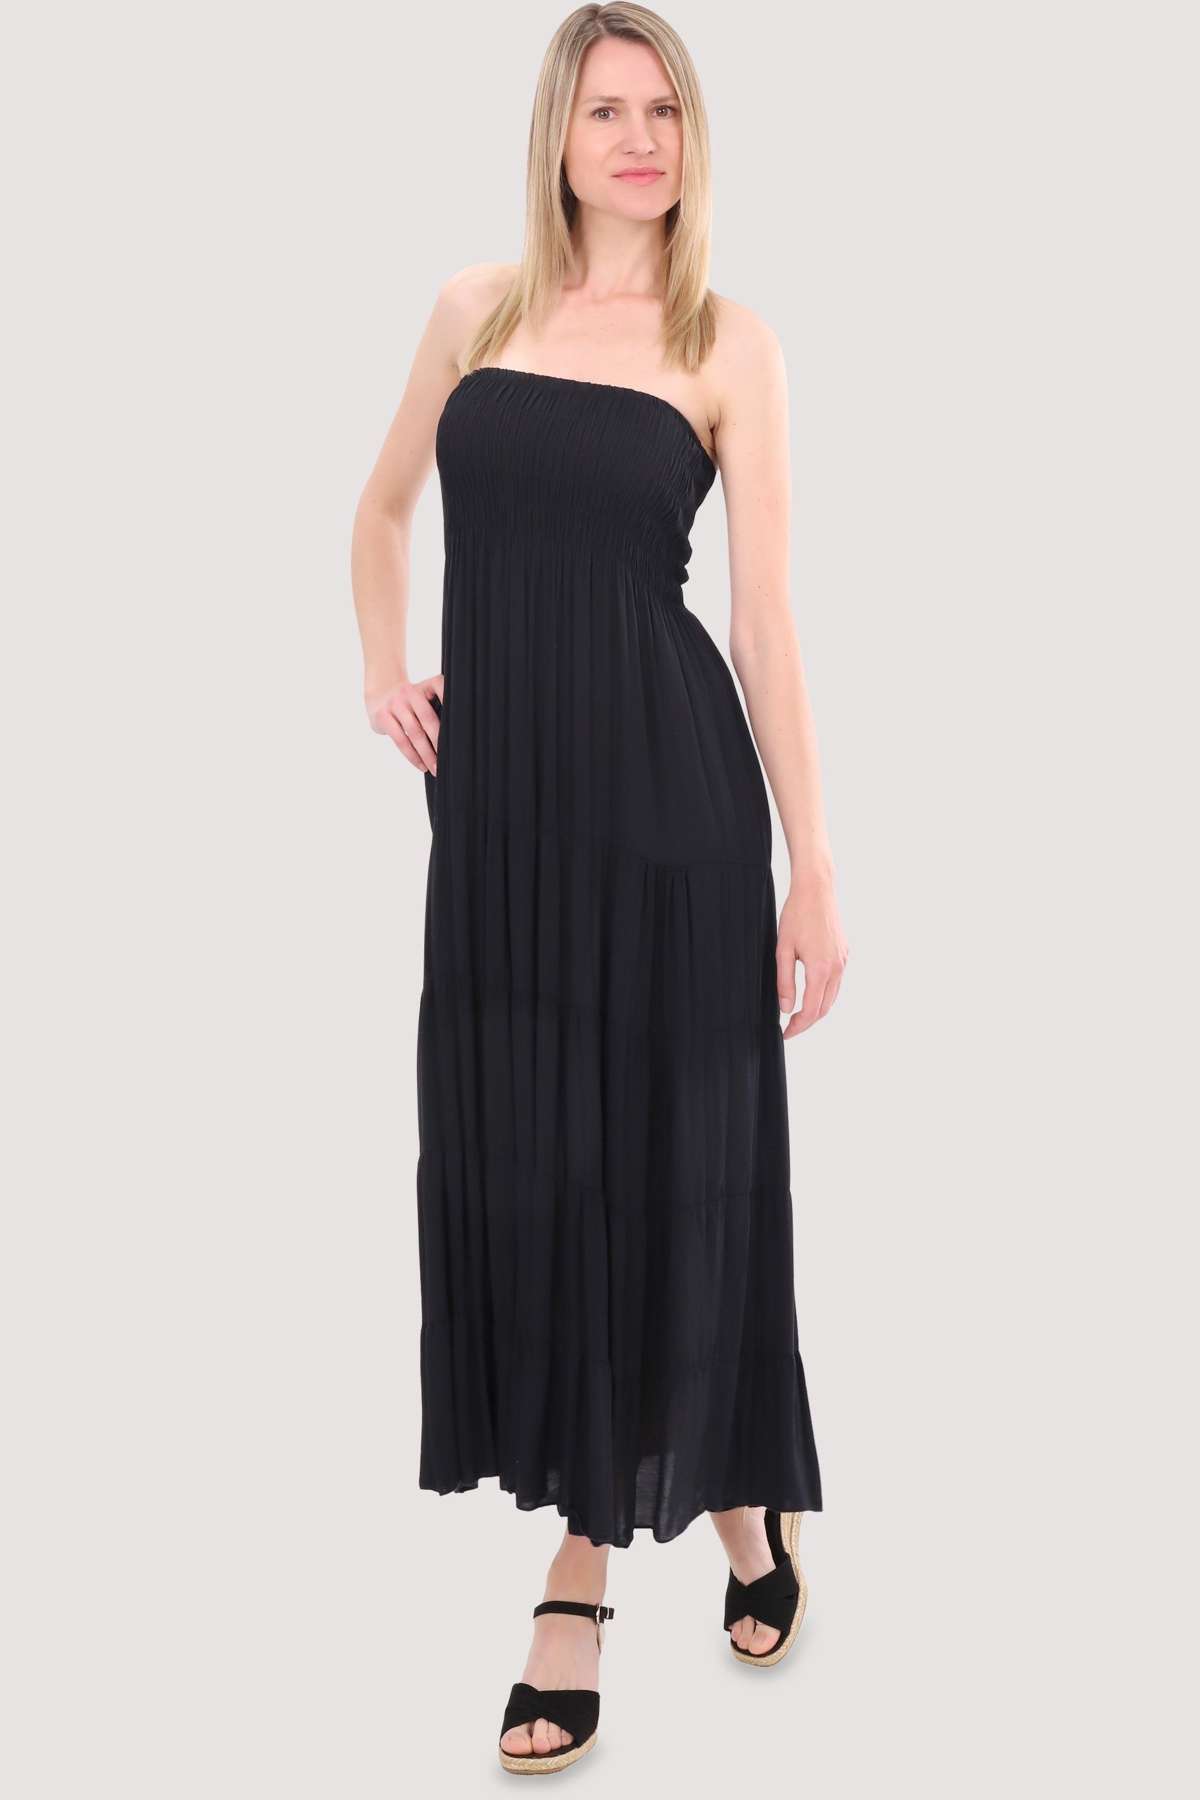 Платье-бандо 4635, облегающее фигуру летнее платье, пляжное платье, один размер